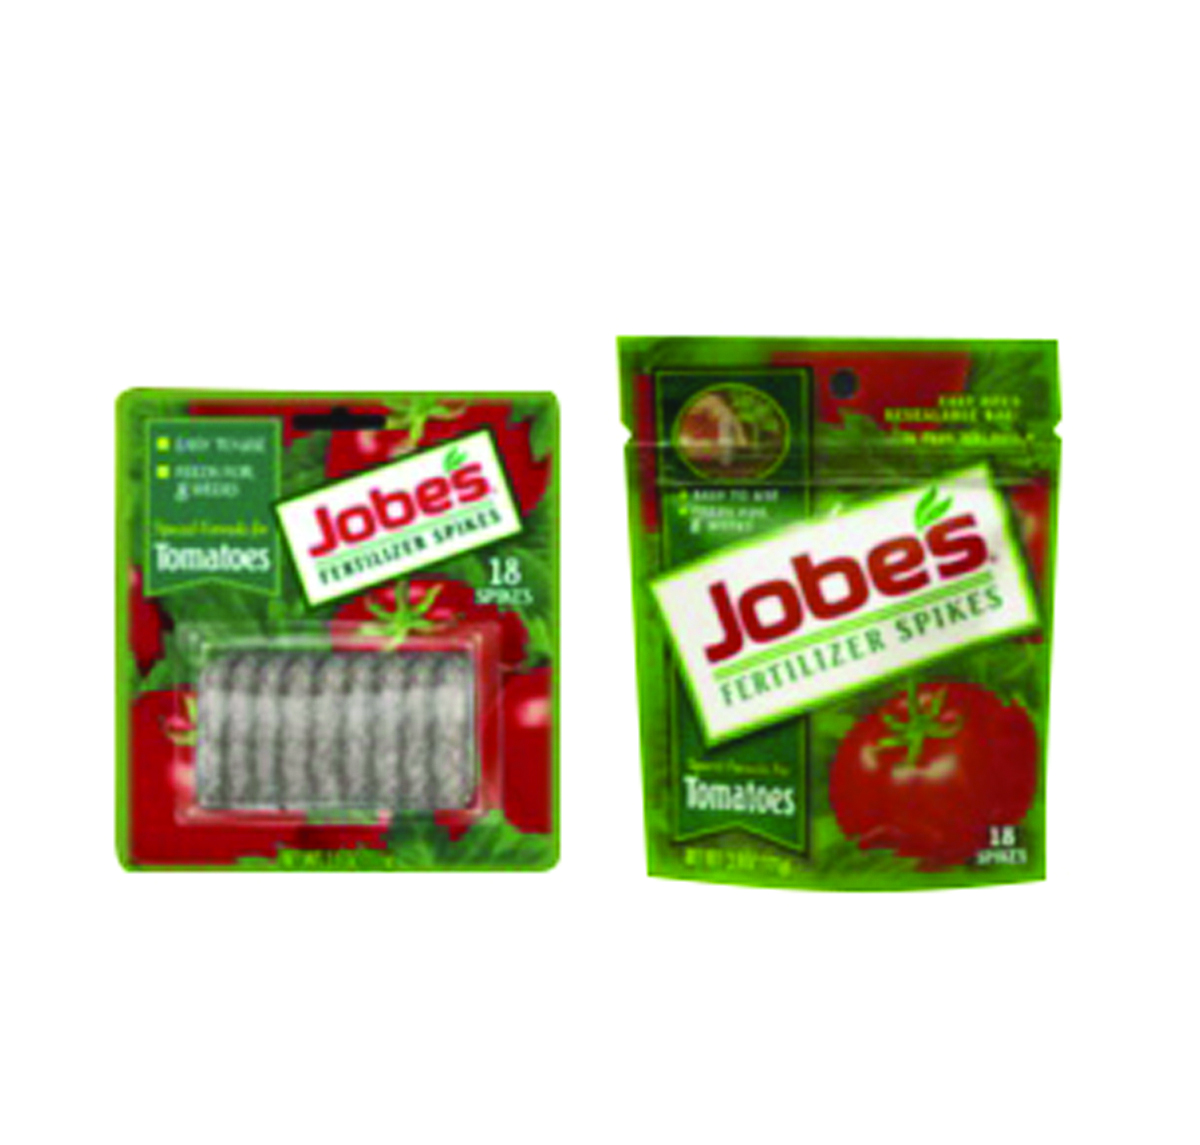 Image Thumbnail for Jobes Tomato Spikes Blister Pkg 6-18-6 (18/Pk)